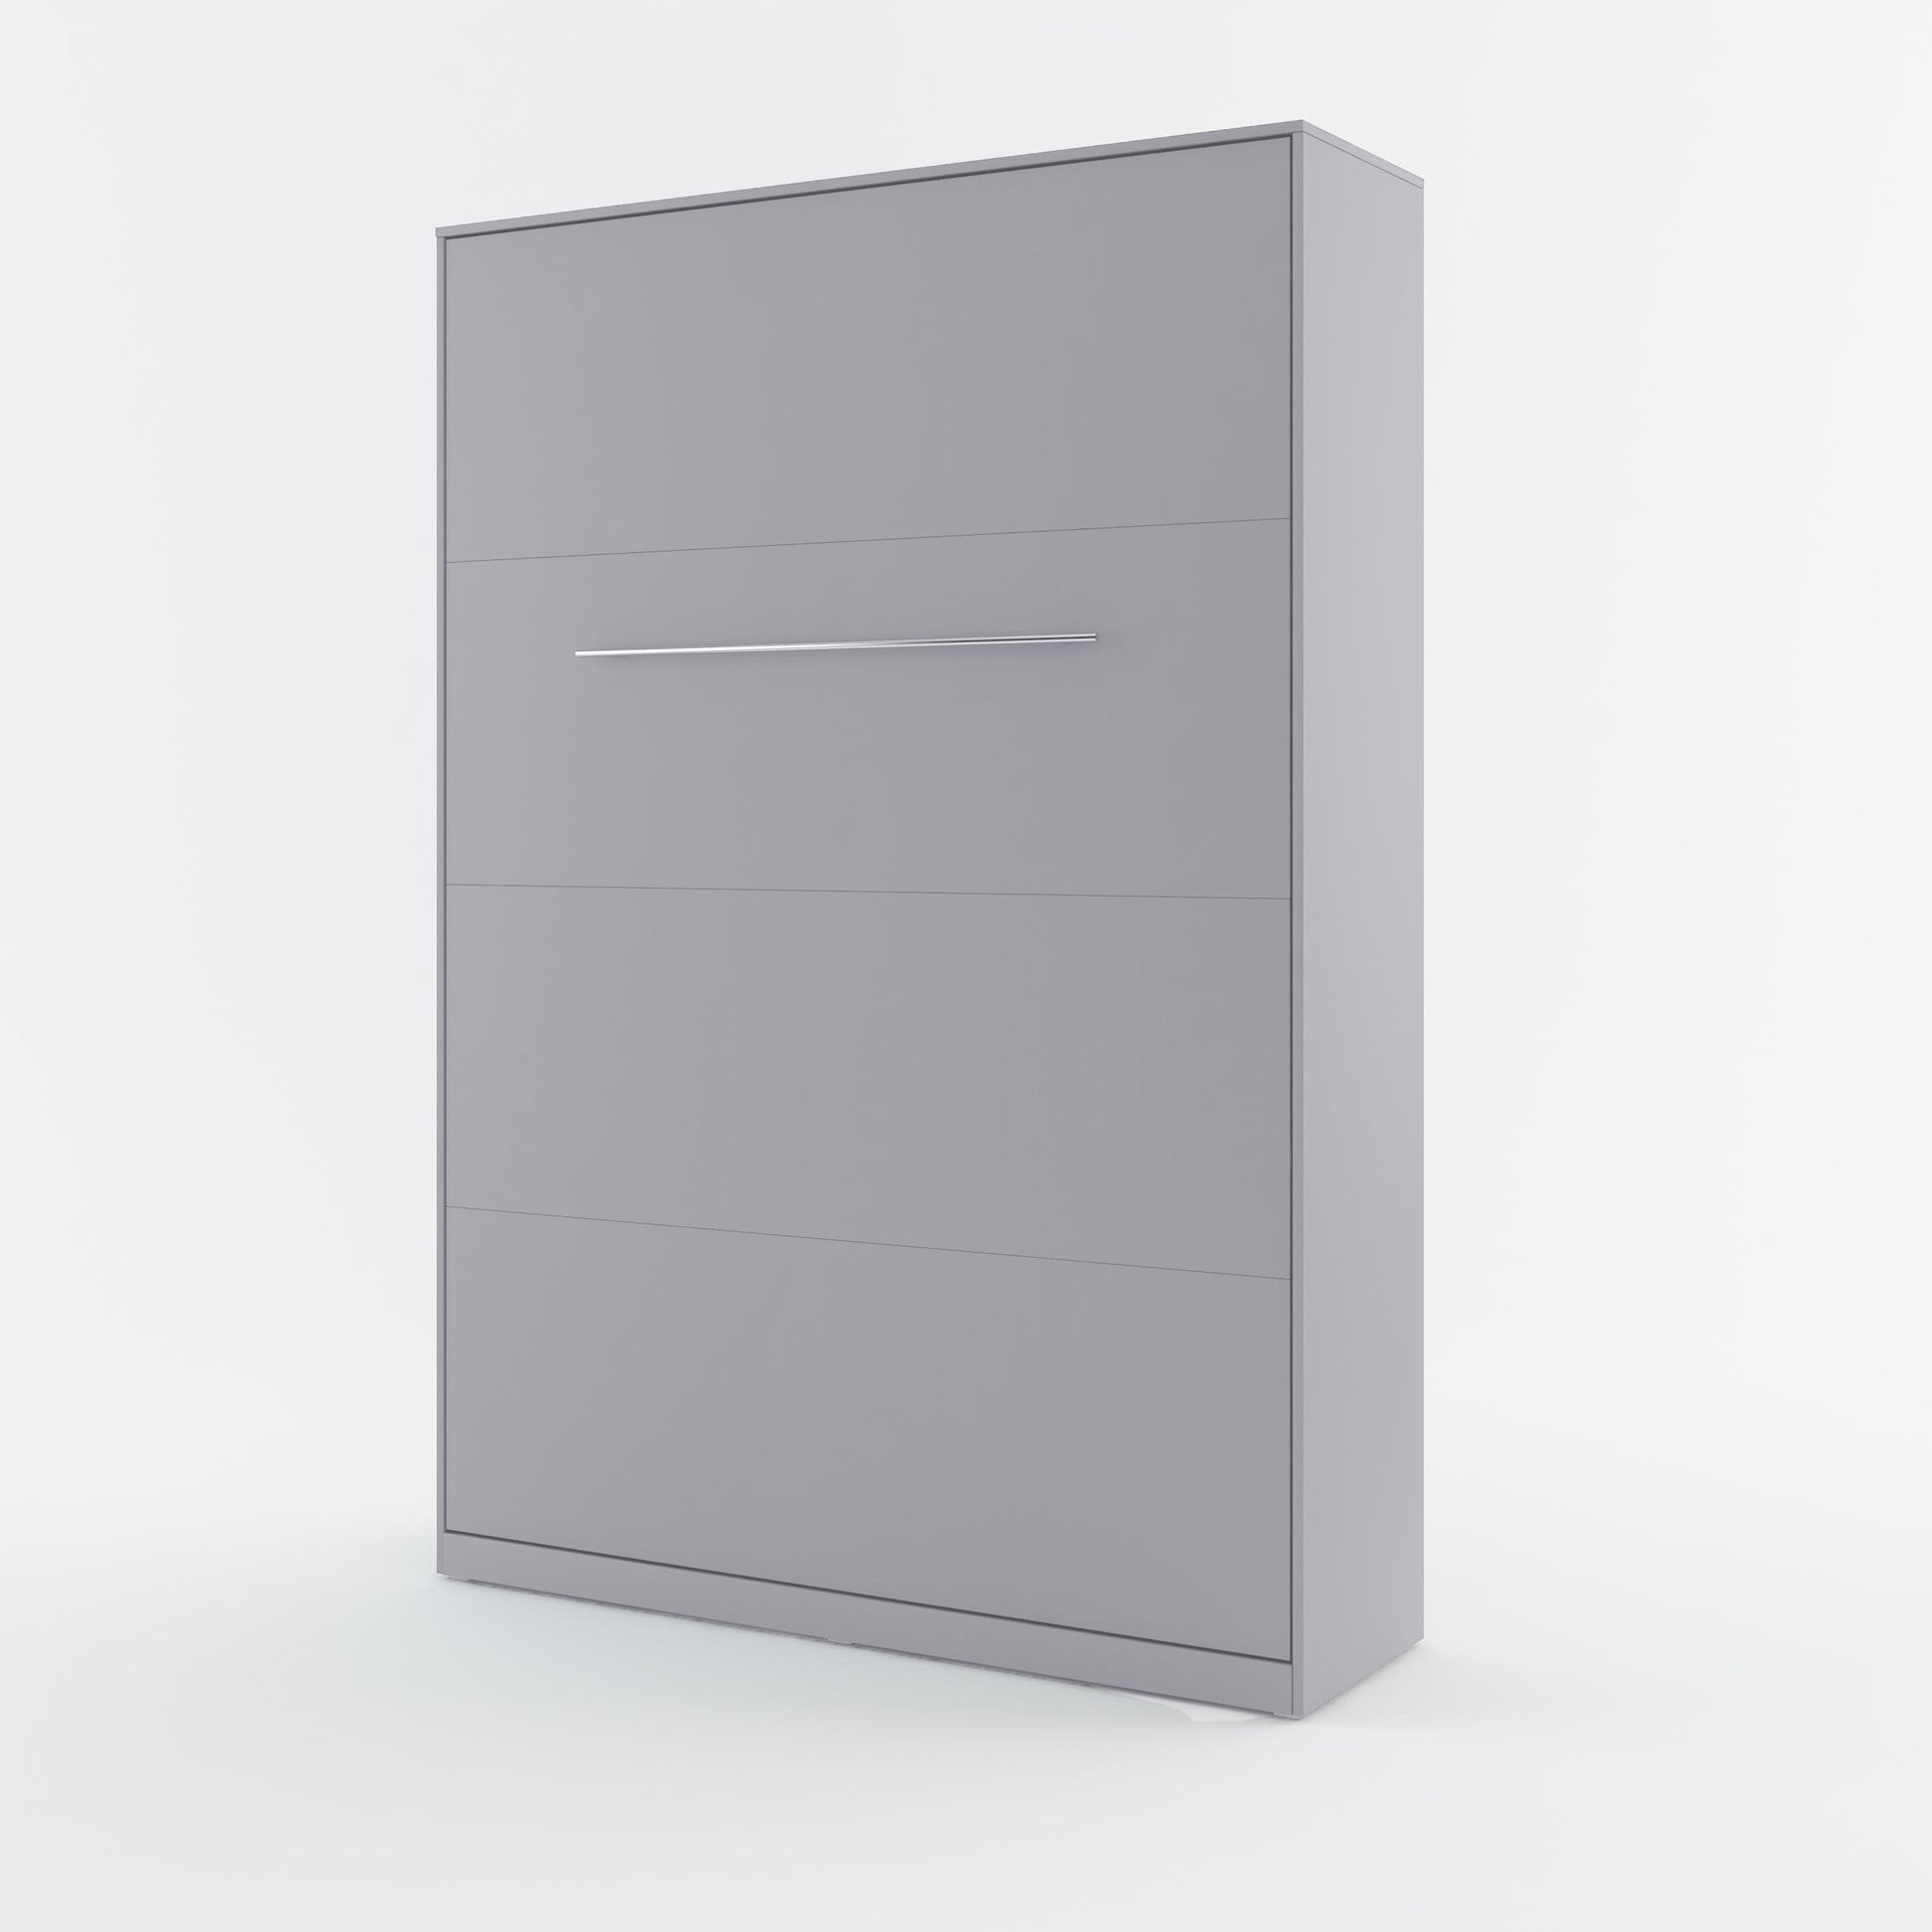 CP-01 Vertical Wall Bed Concept 140cm Grey Matt Wall Bed 